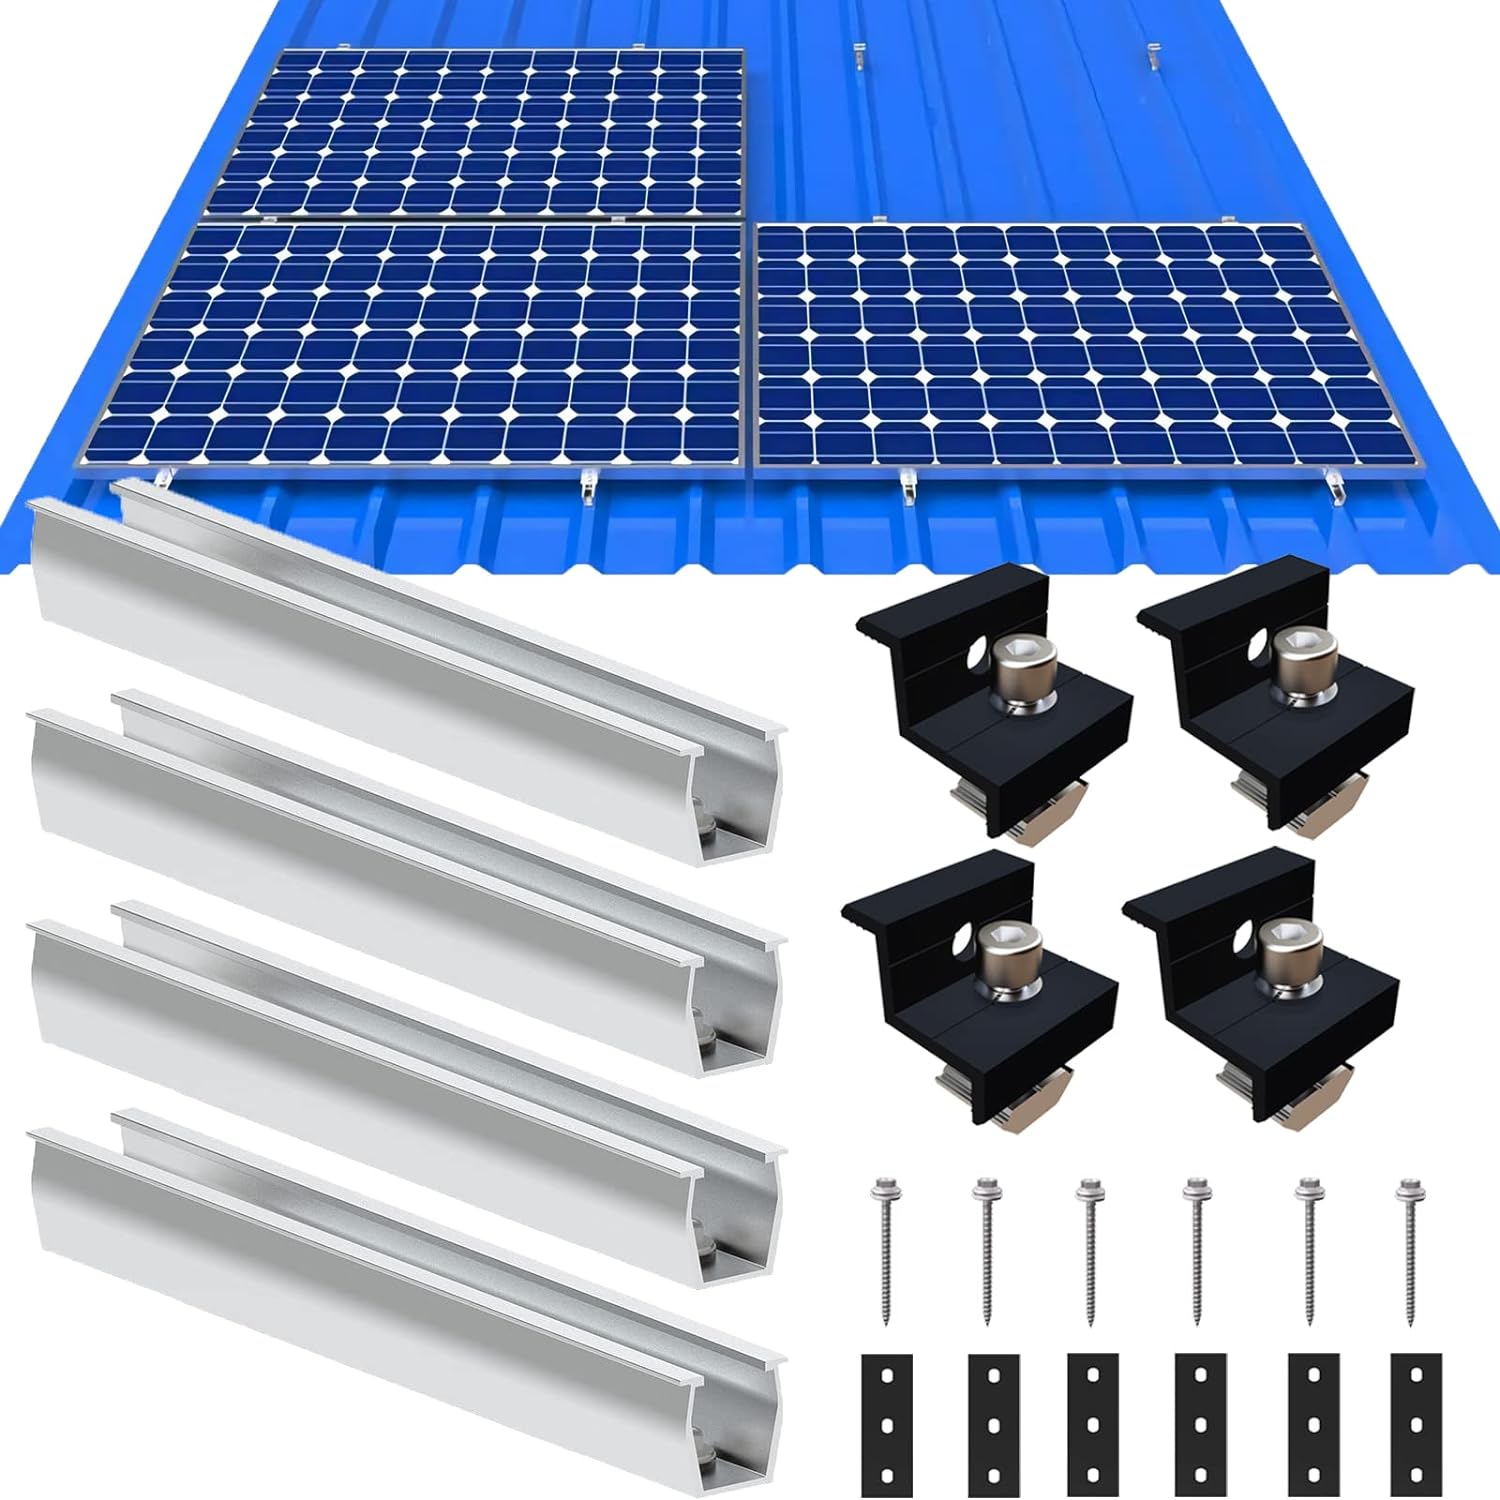 Solarmodul Halterung Flachdach, Befestigung Solarmodul Montage Set 1 Module, Alu Solarpanel Halterung Verstellbare Klemme für 30-35MM Dicke Module, PV Modul Halterung Geeignet für Flachdach Trapezdach